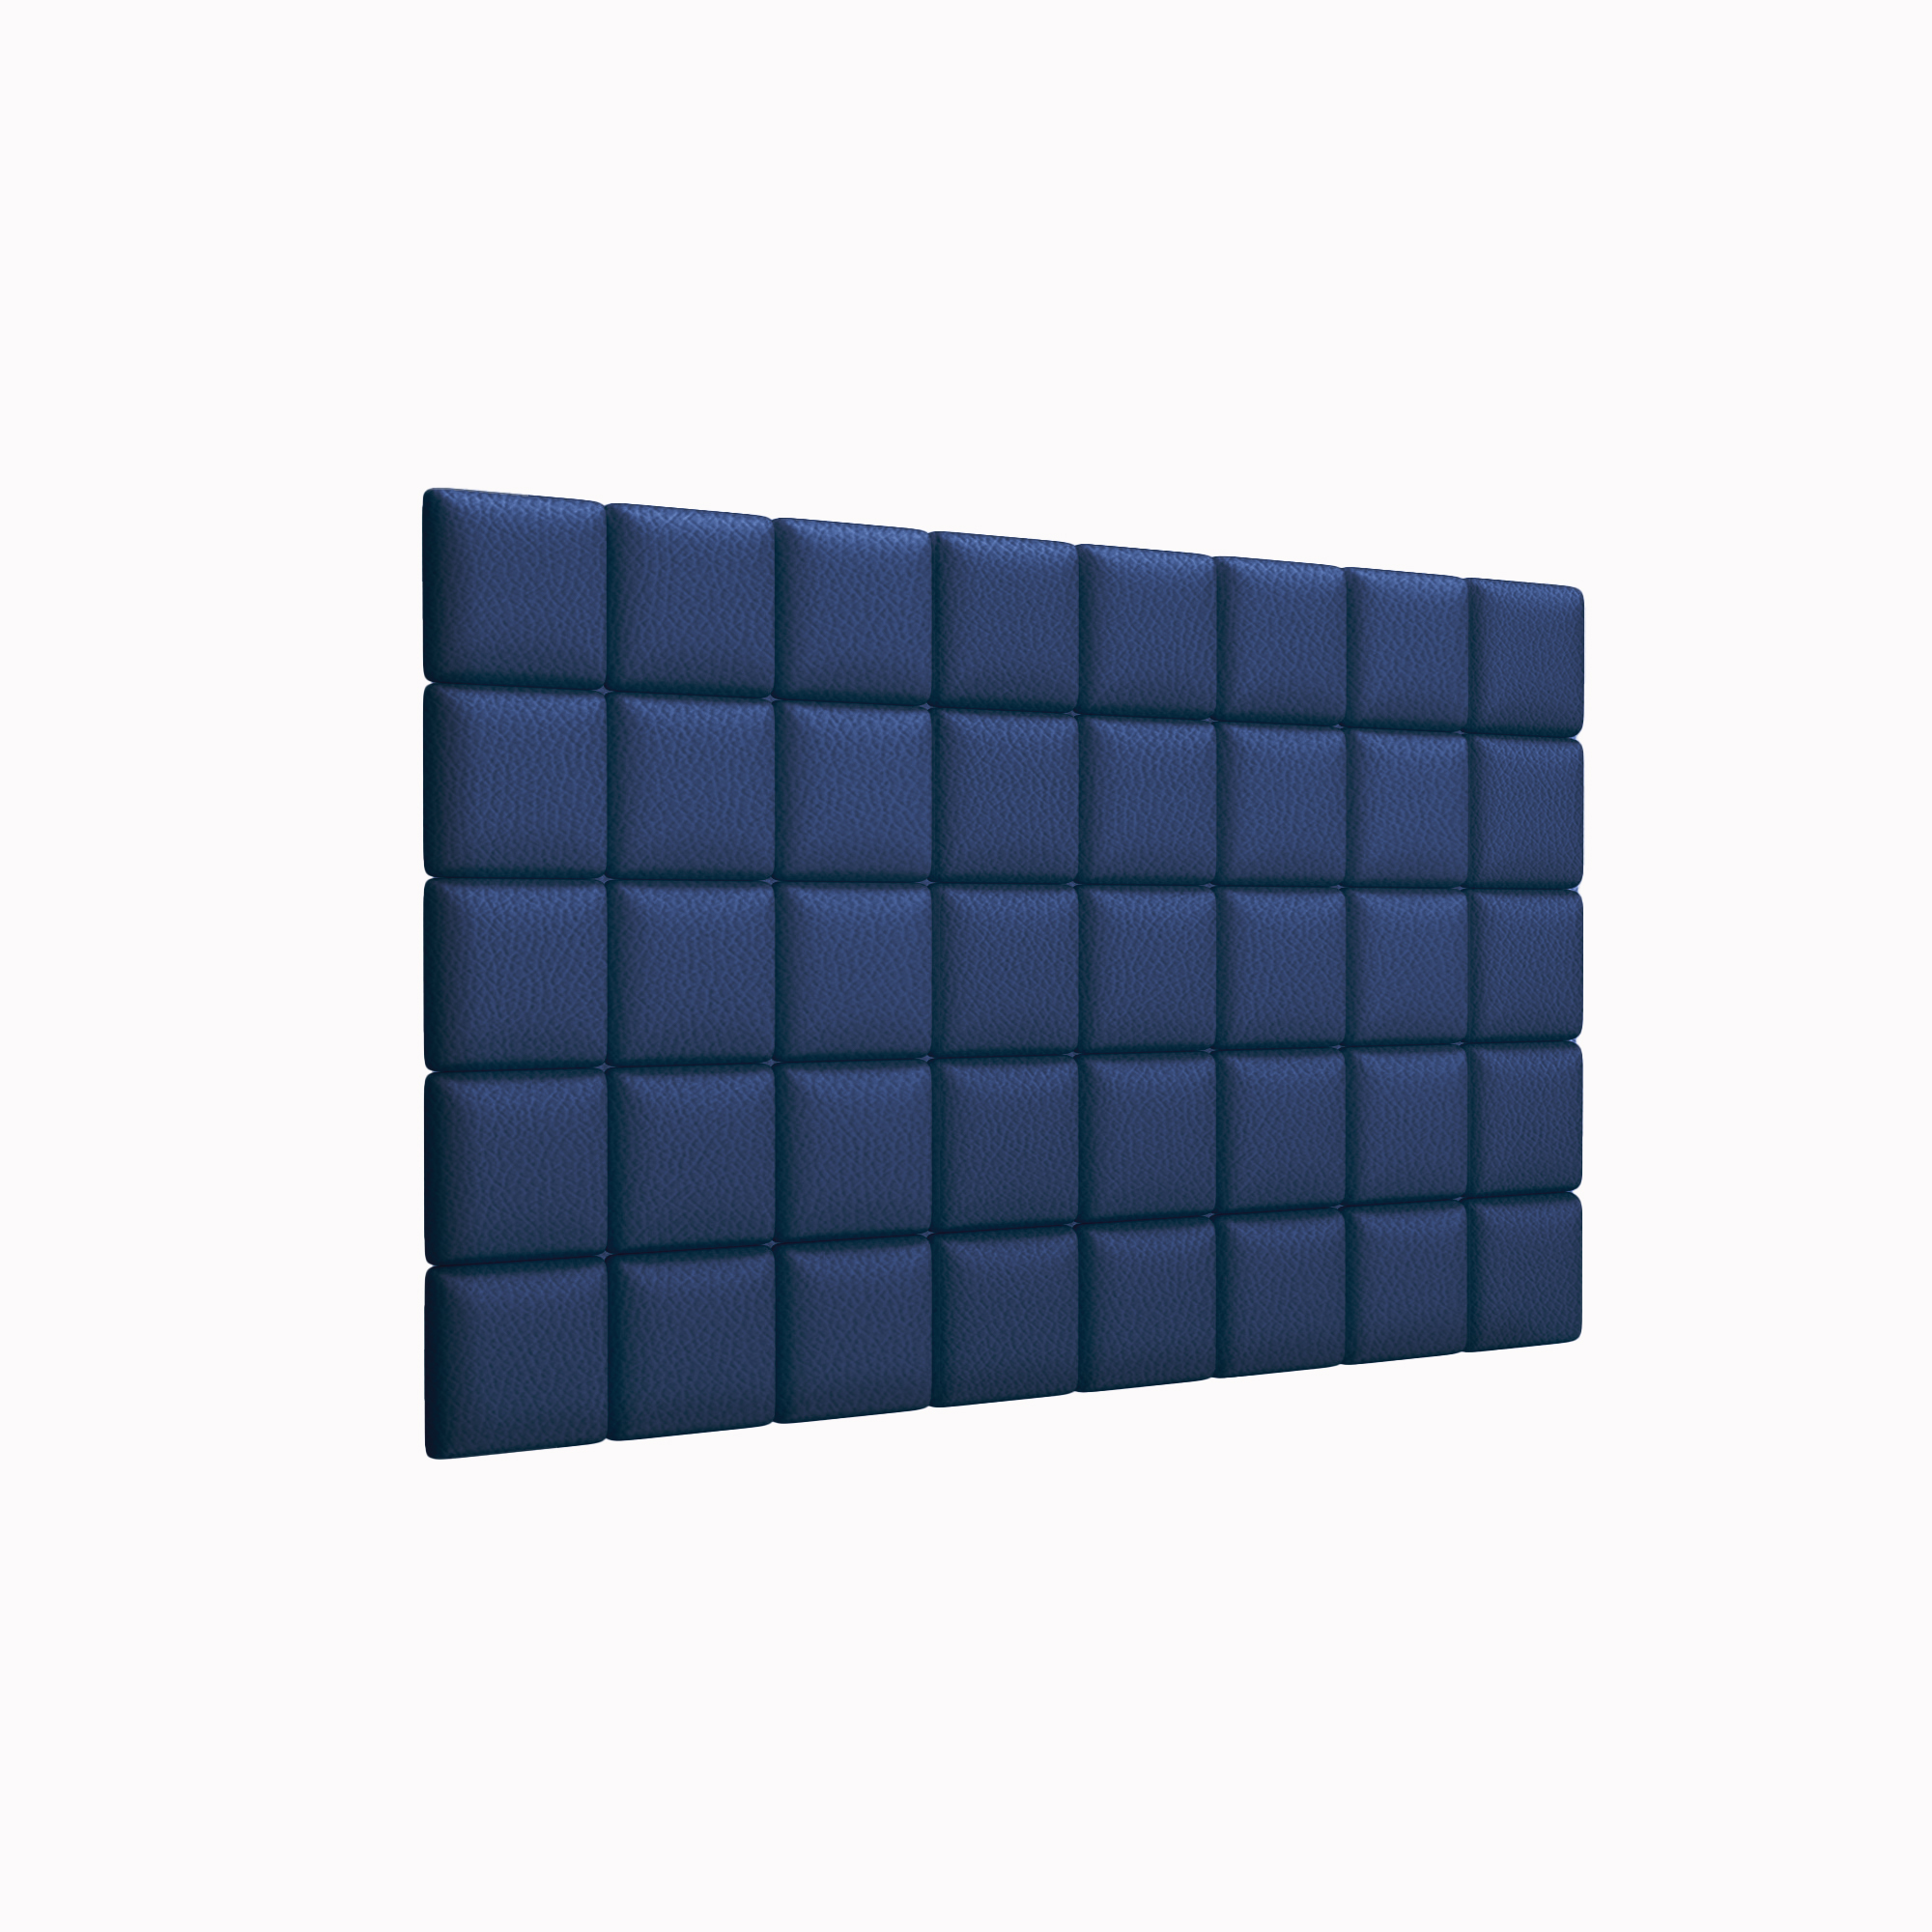 Мягкие стеновые панели Eco Leather Blue 15х15 см 8 шт. cliny мягкие коготки для кошек пурпурные 40 шт